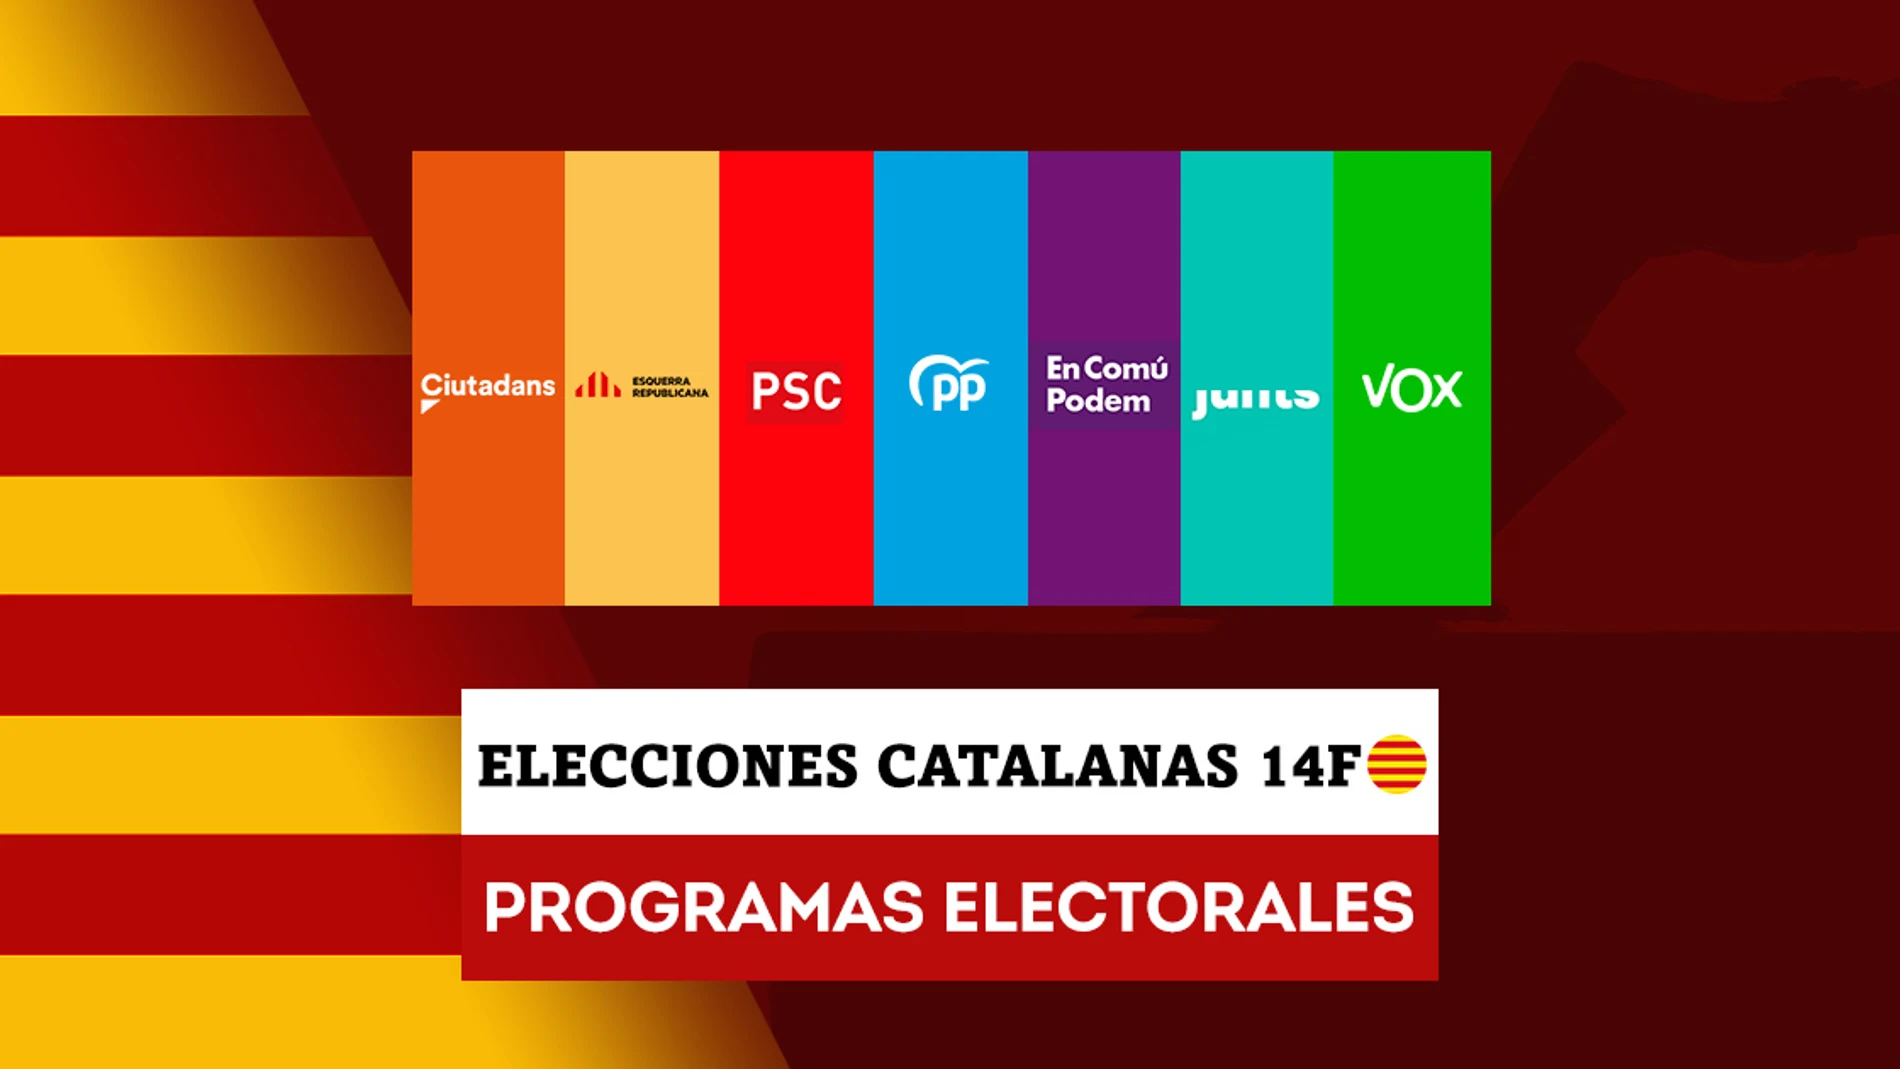 Estos son los programas electorales de los principales partidos en las elecciones en Cataluña